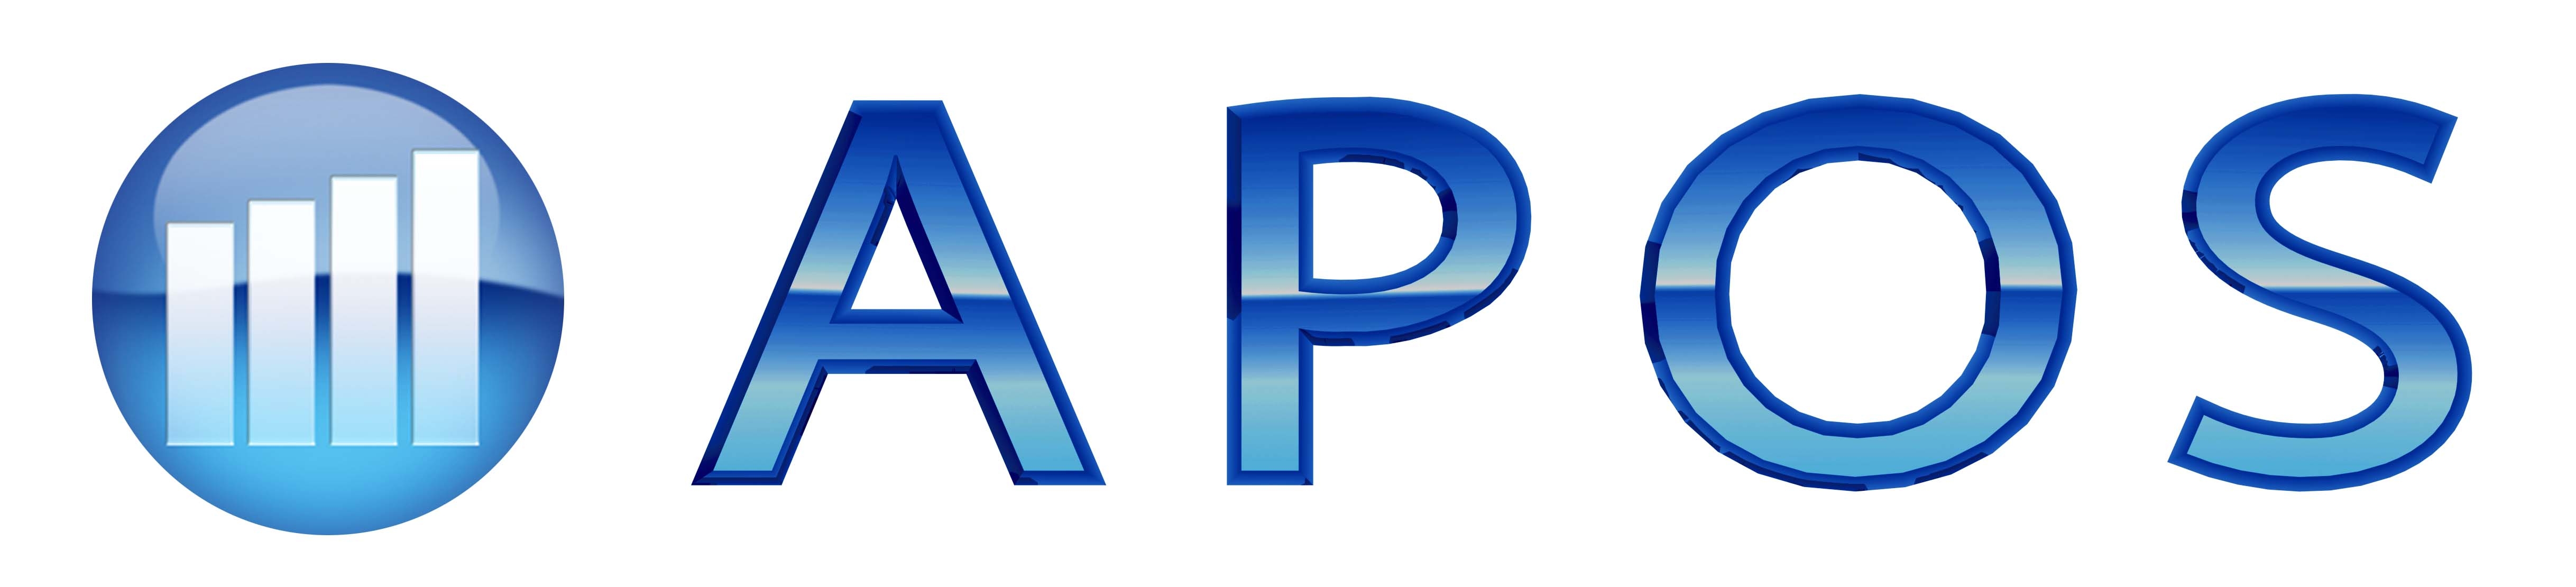 APO Logo